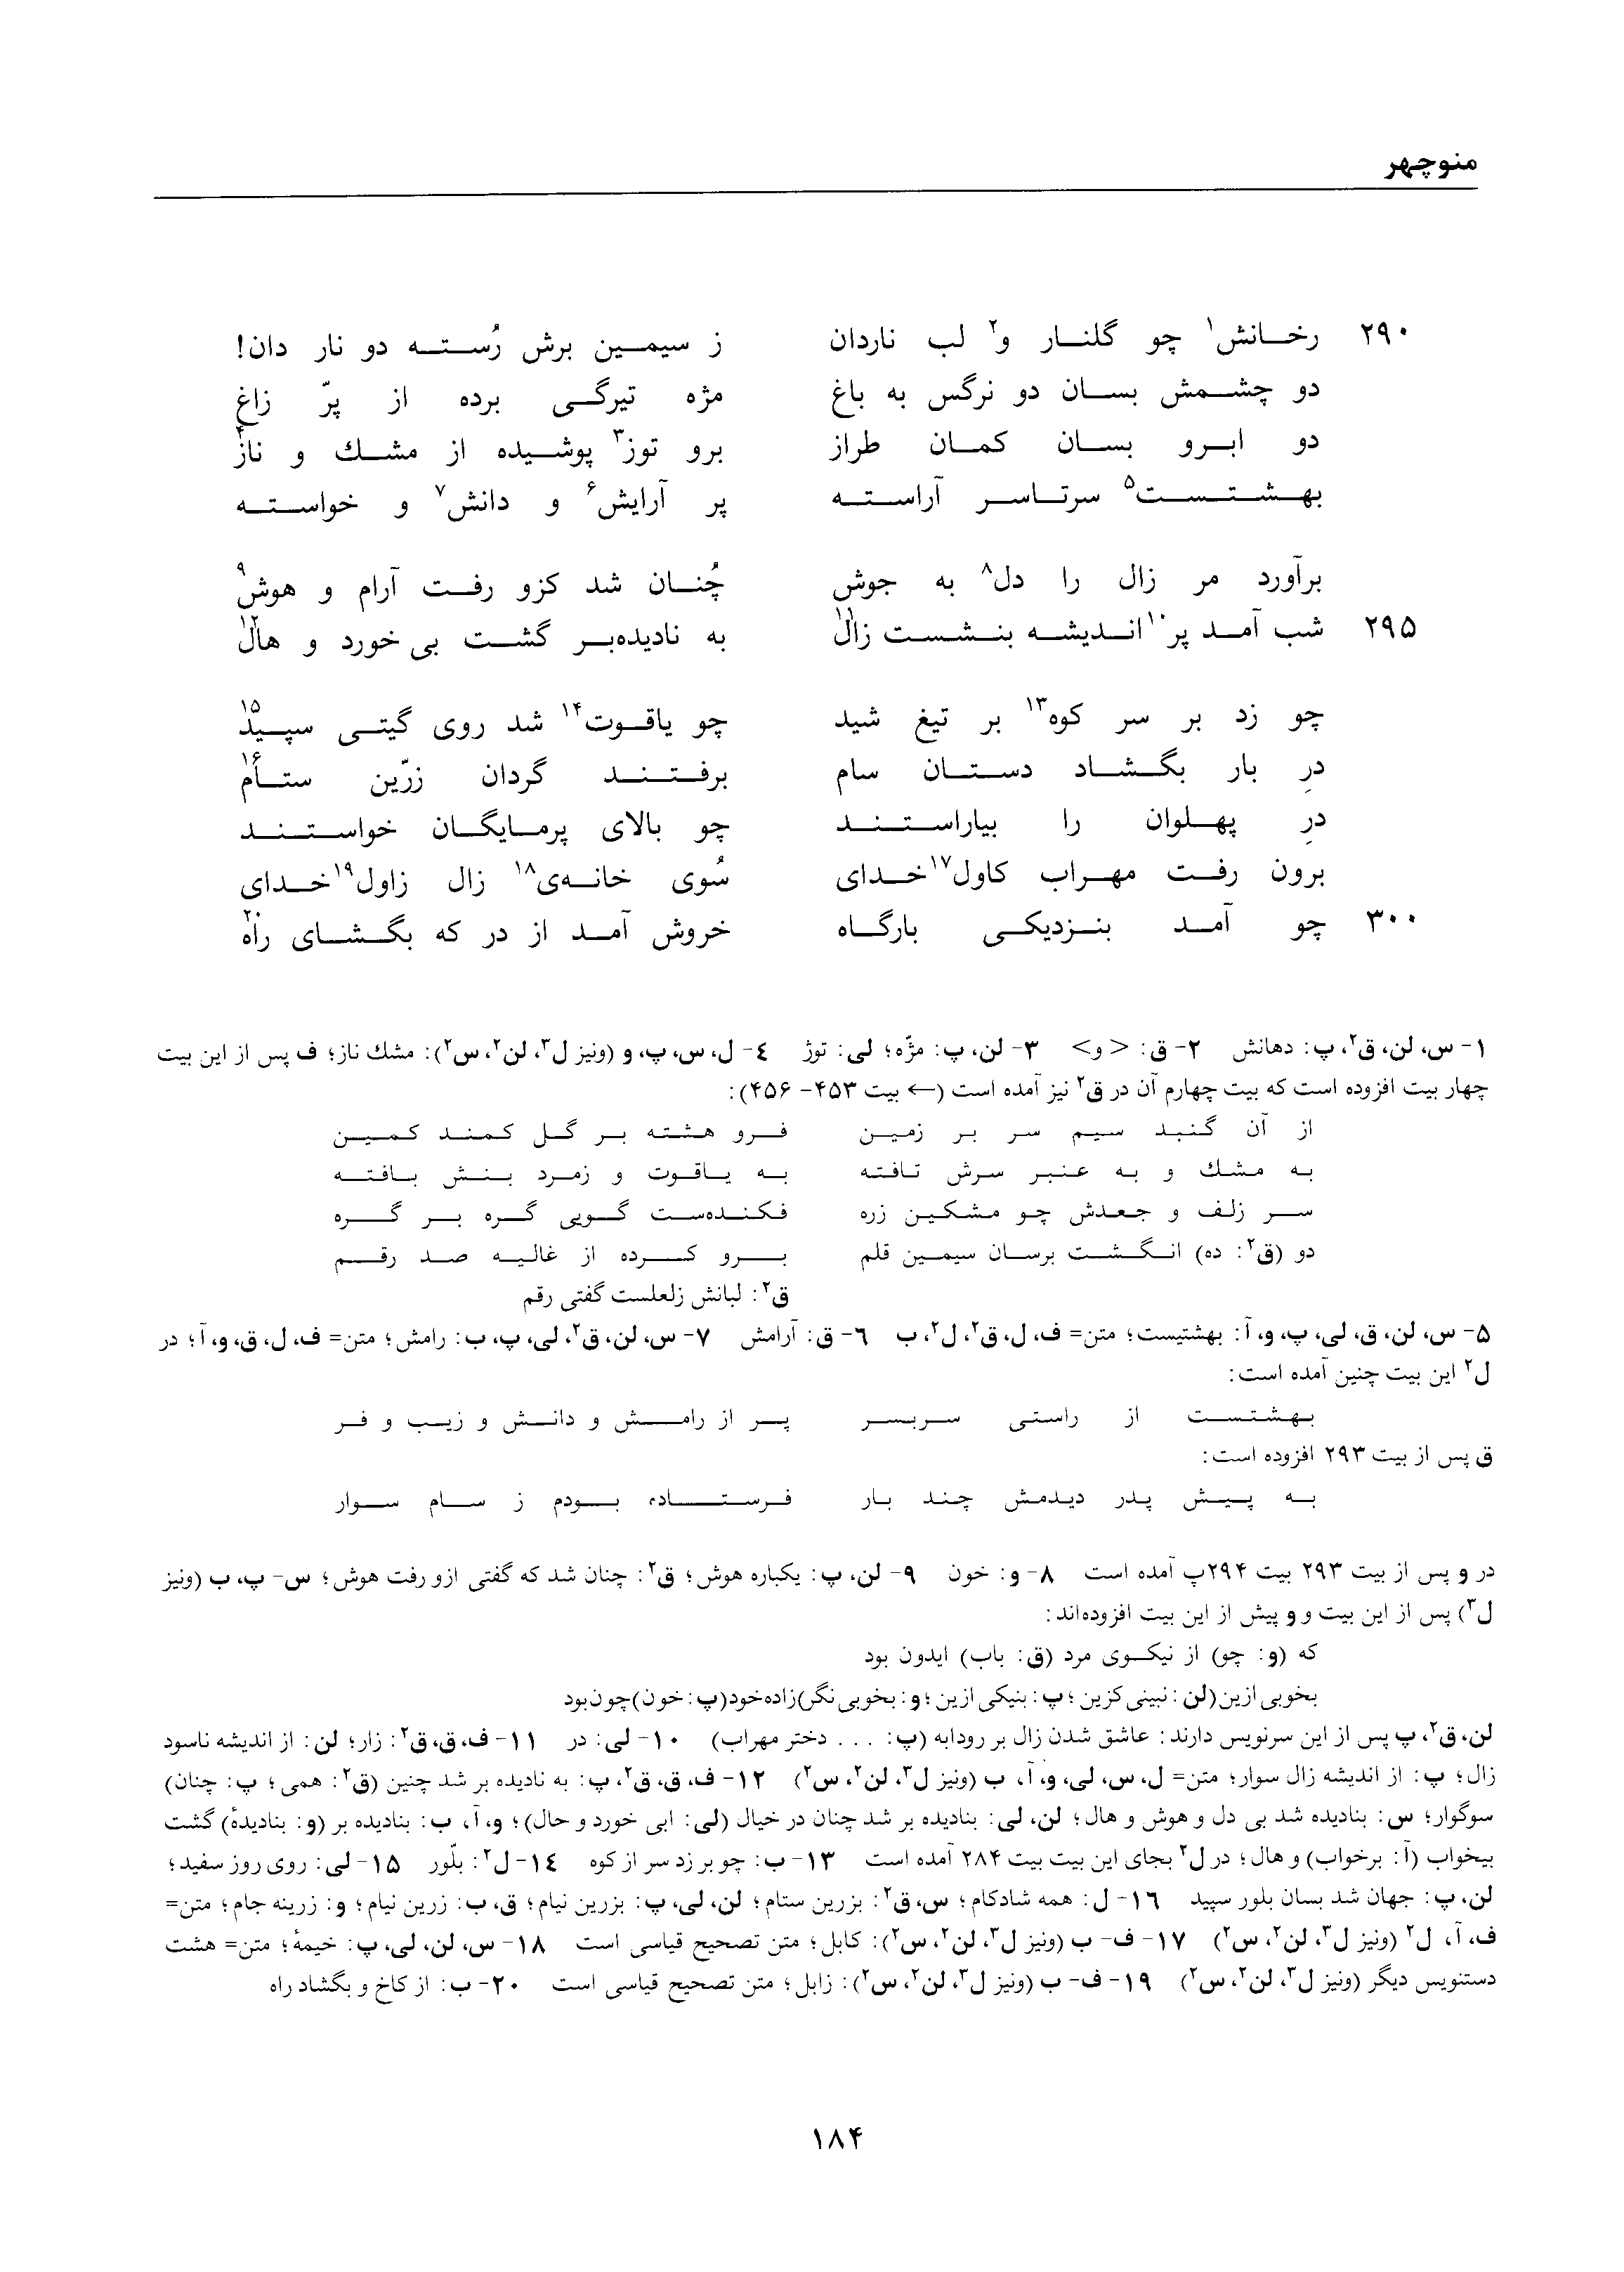 vol. 1, p. 184